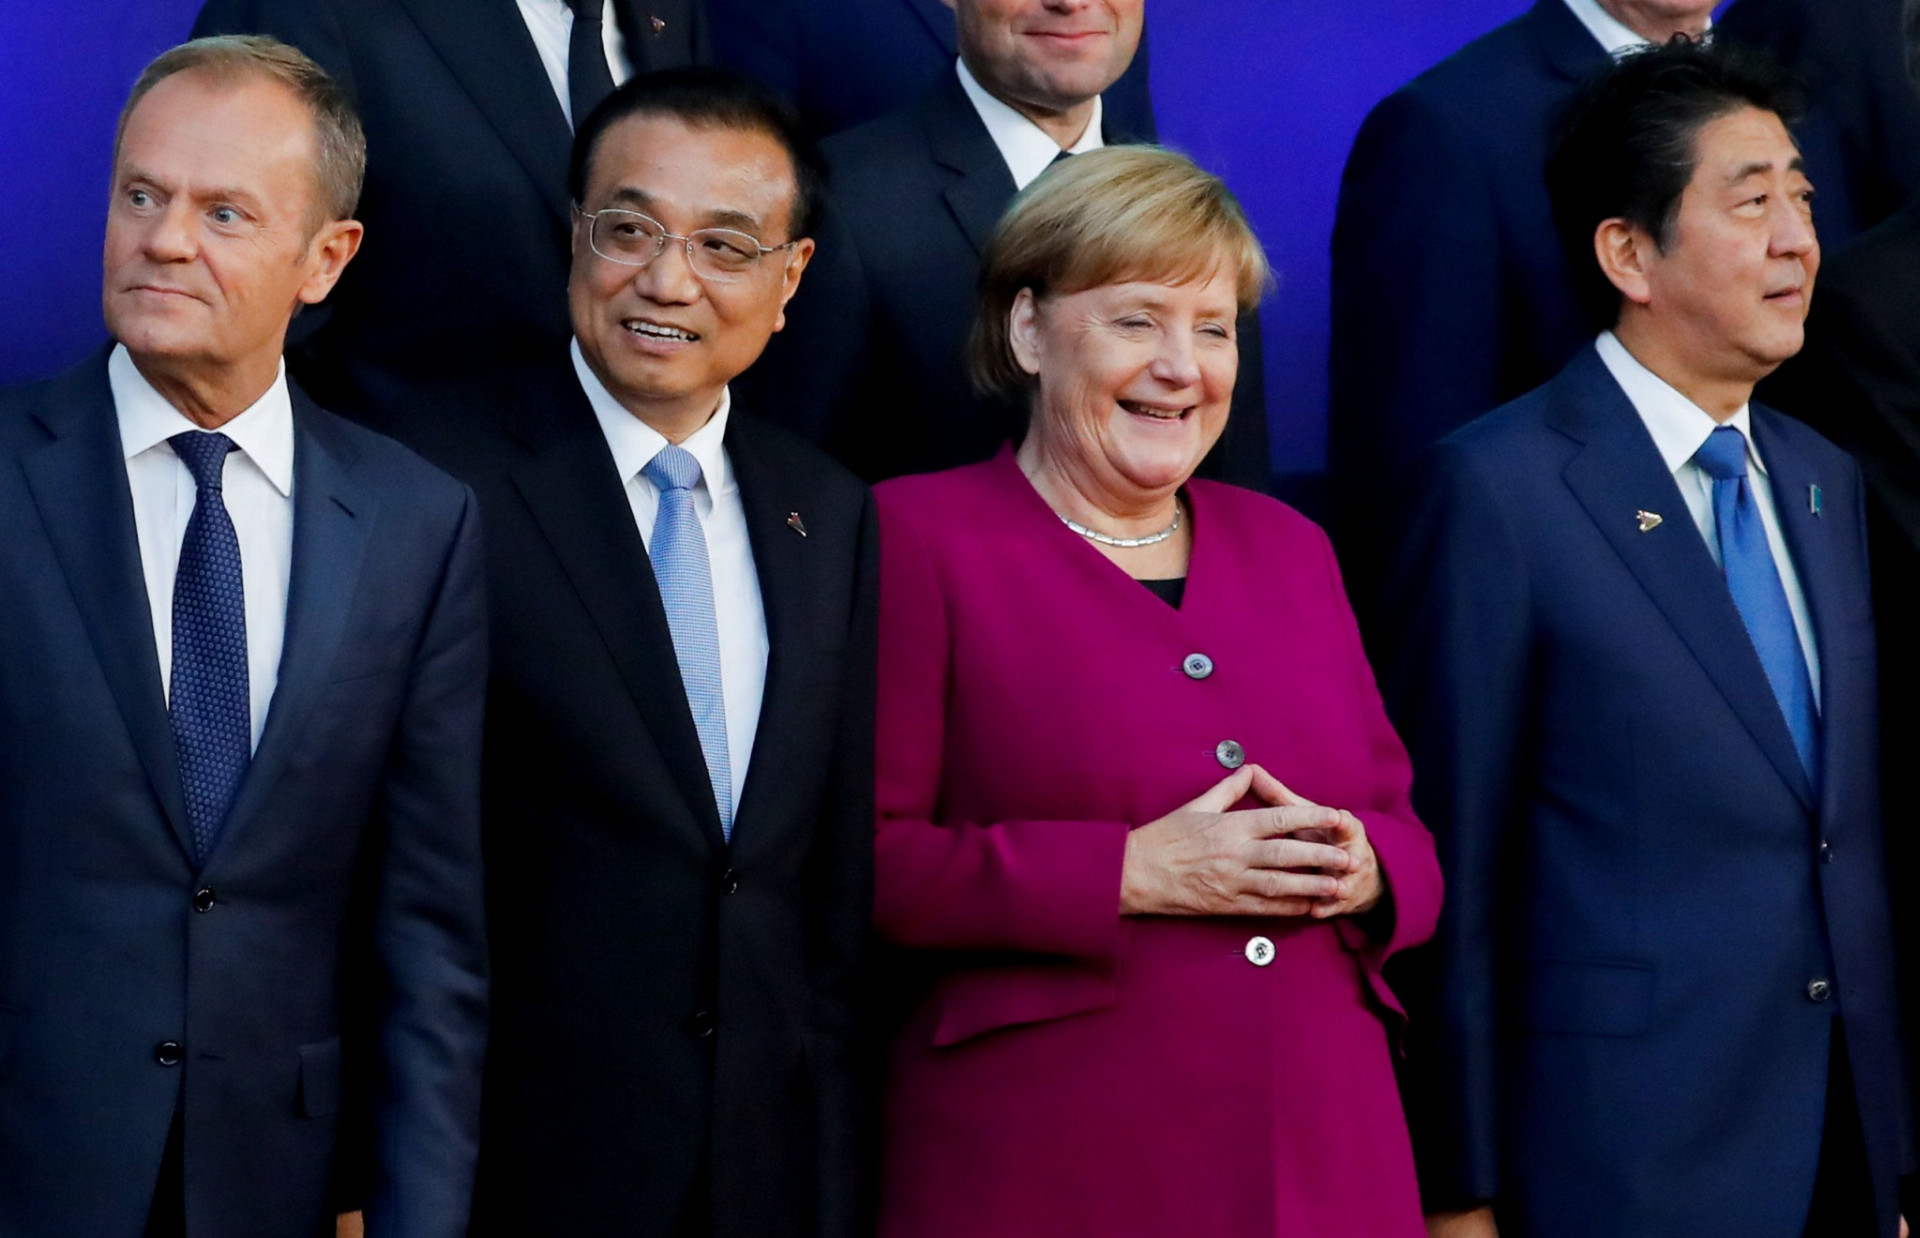 Nemecká kancelárka Angela Merkelová a (zľava) predseda Európskej rady Donald Tusk hovorili na samite v Bruseli aj s čínskym premiérom Li Kche-čchiangom i so šéfom japonskej vlády Šinzóom Abem.